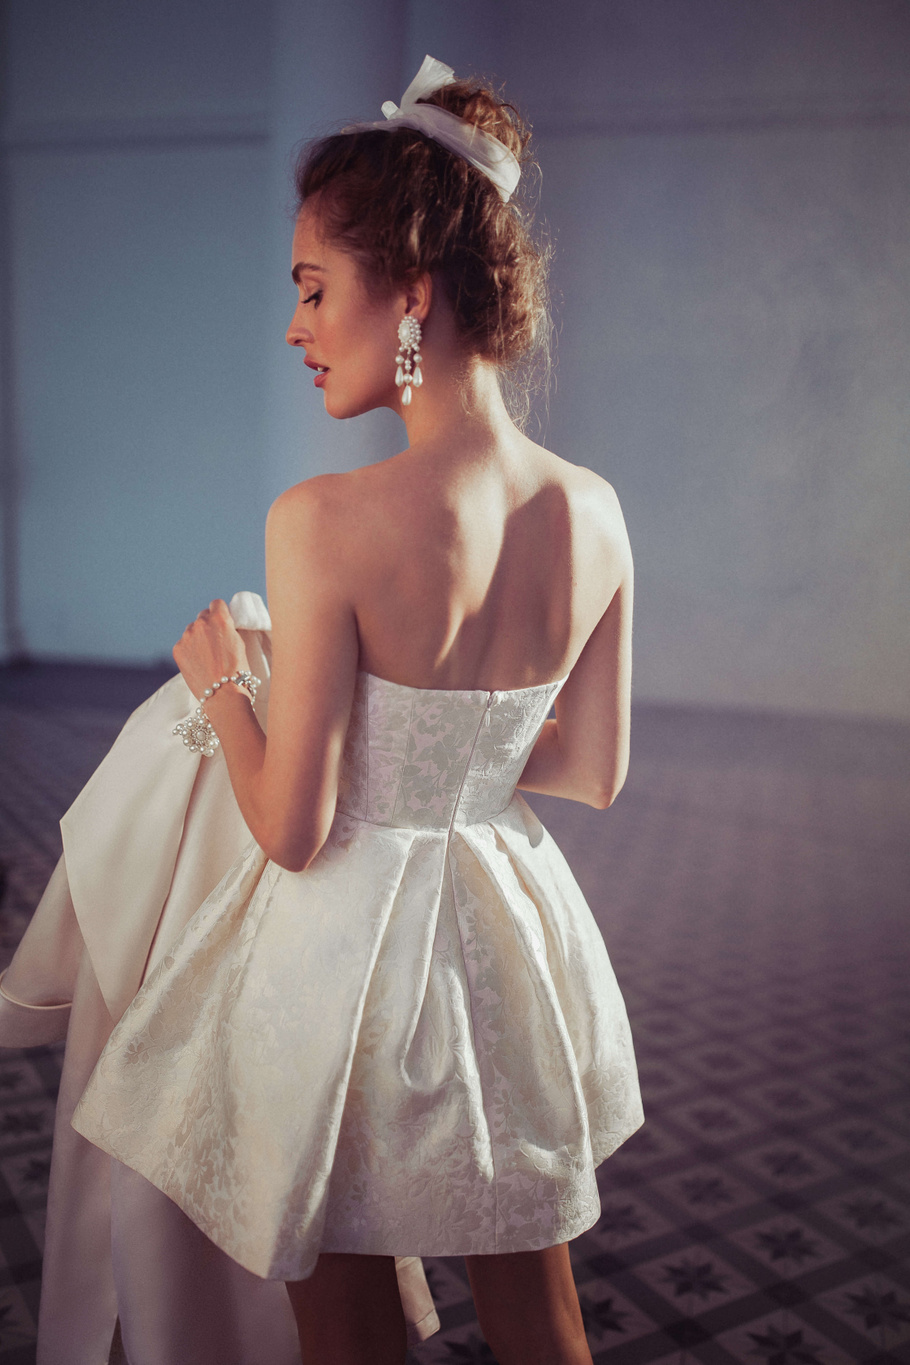 Купить свадебное платье «Чезара» Бламмо Биамо из коллекции Свит Лайф 2021 года в Санкт-Петербурге